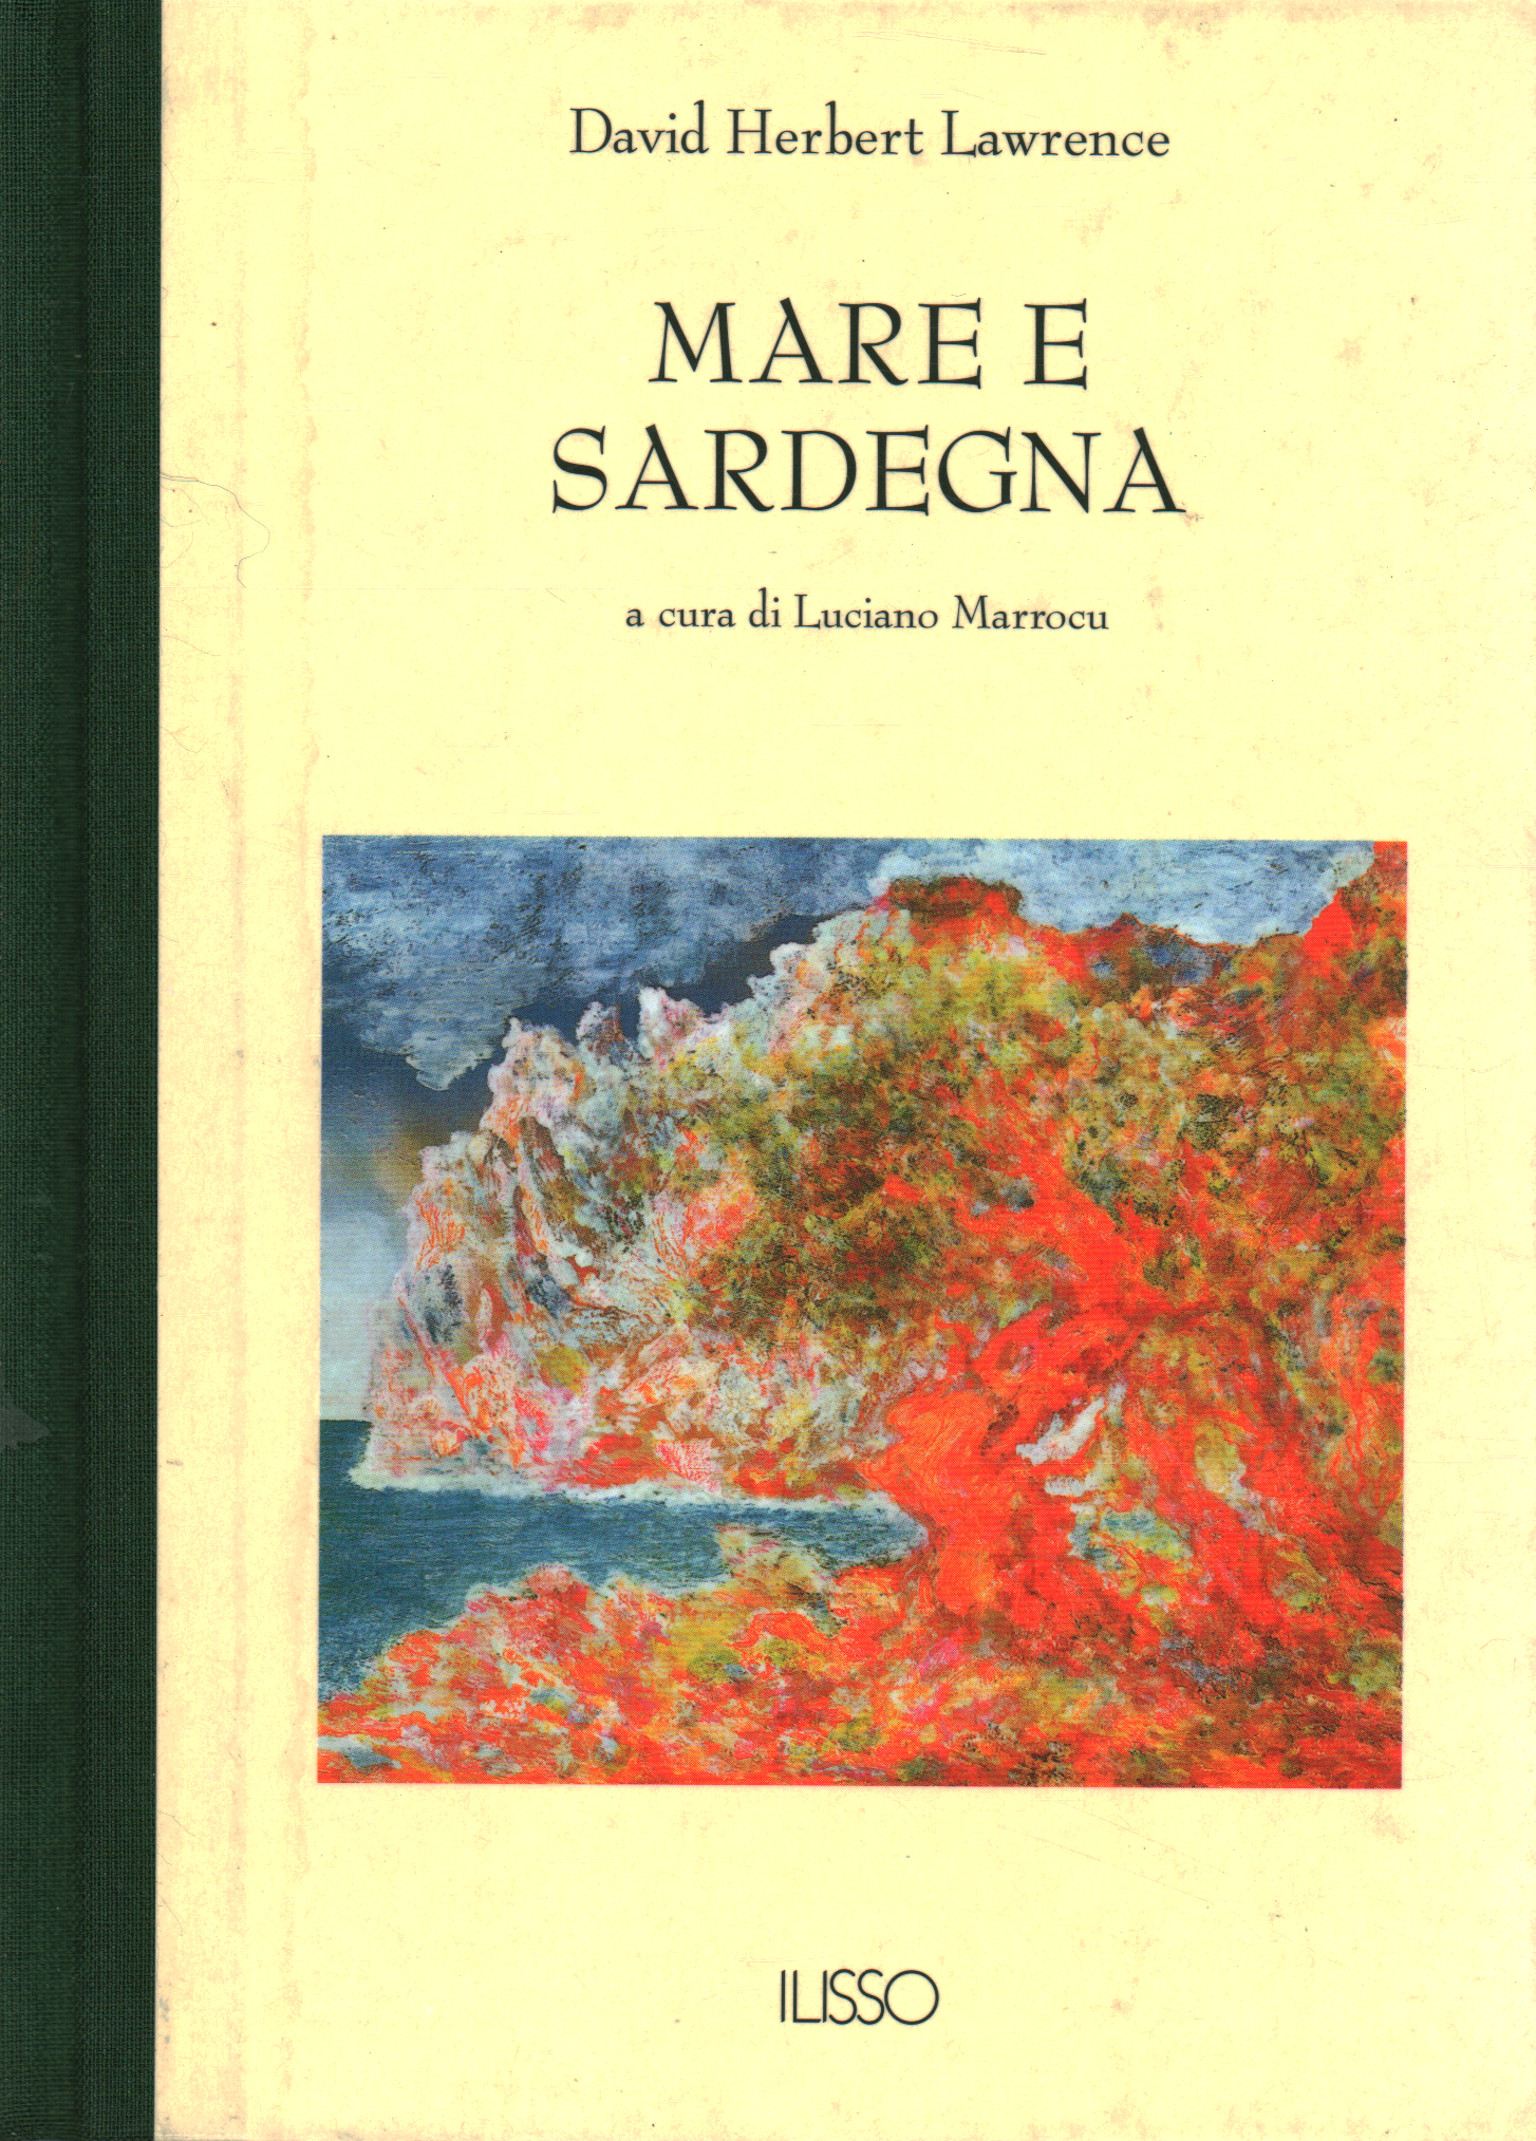 Meer und Sardinien, David Herbert Lawrence